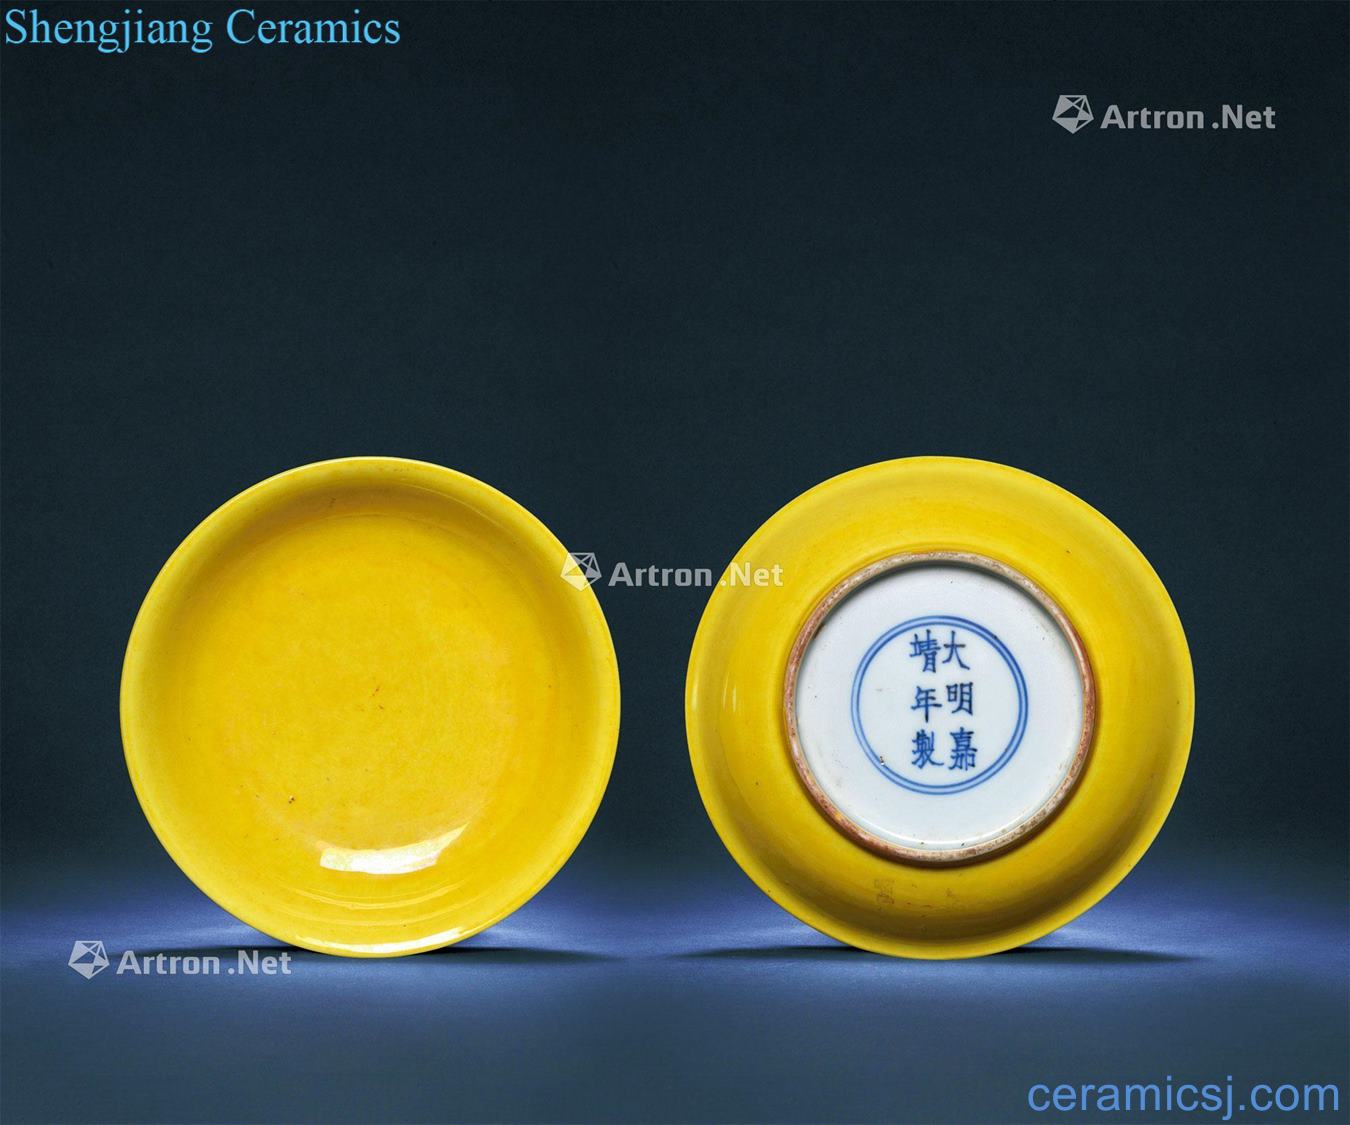 Ming jiajing jiao yellow glaze plate (a)